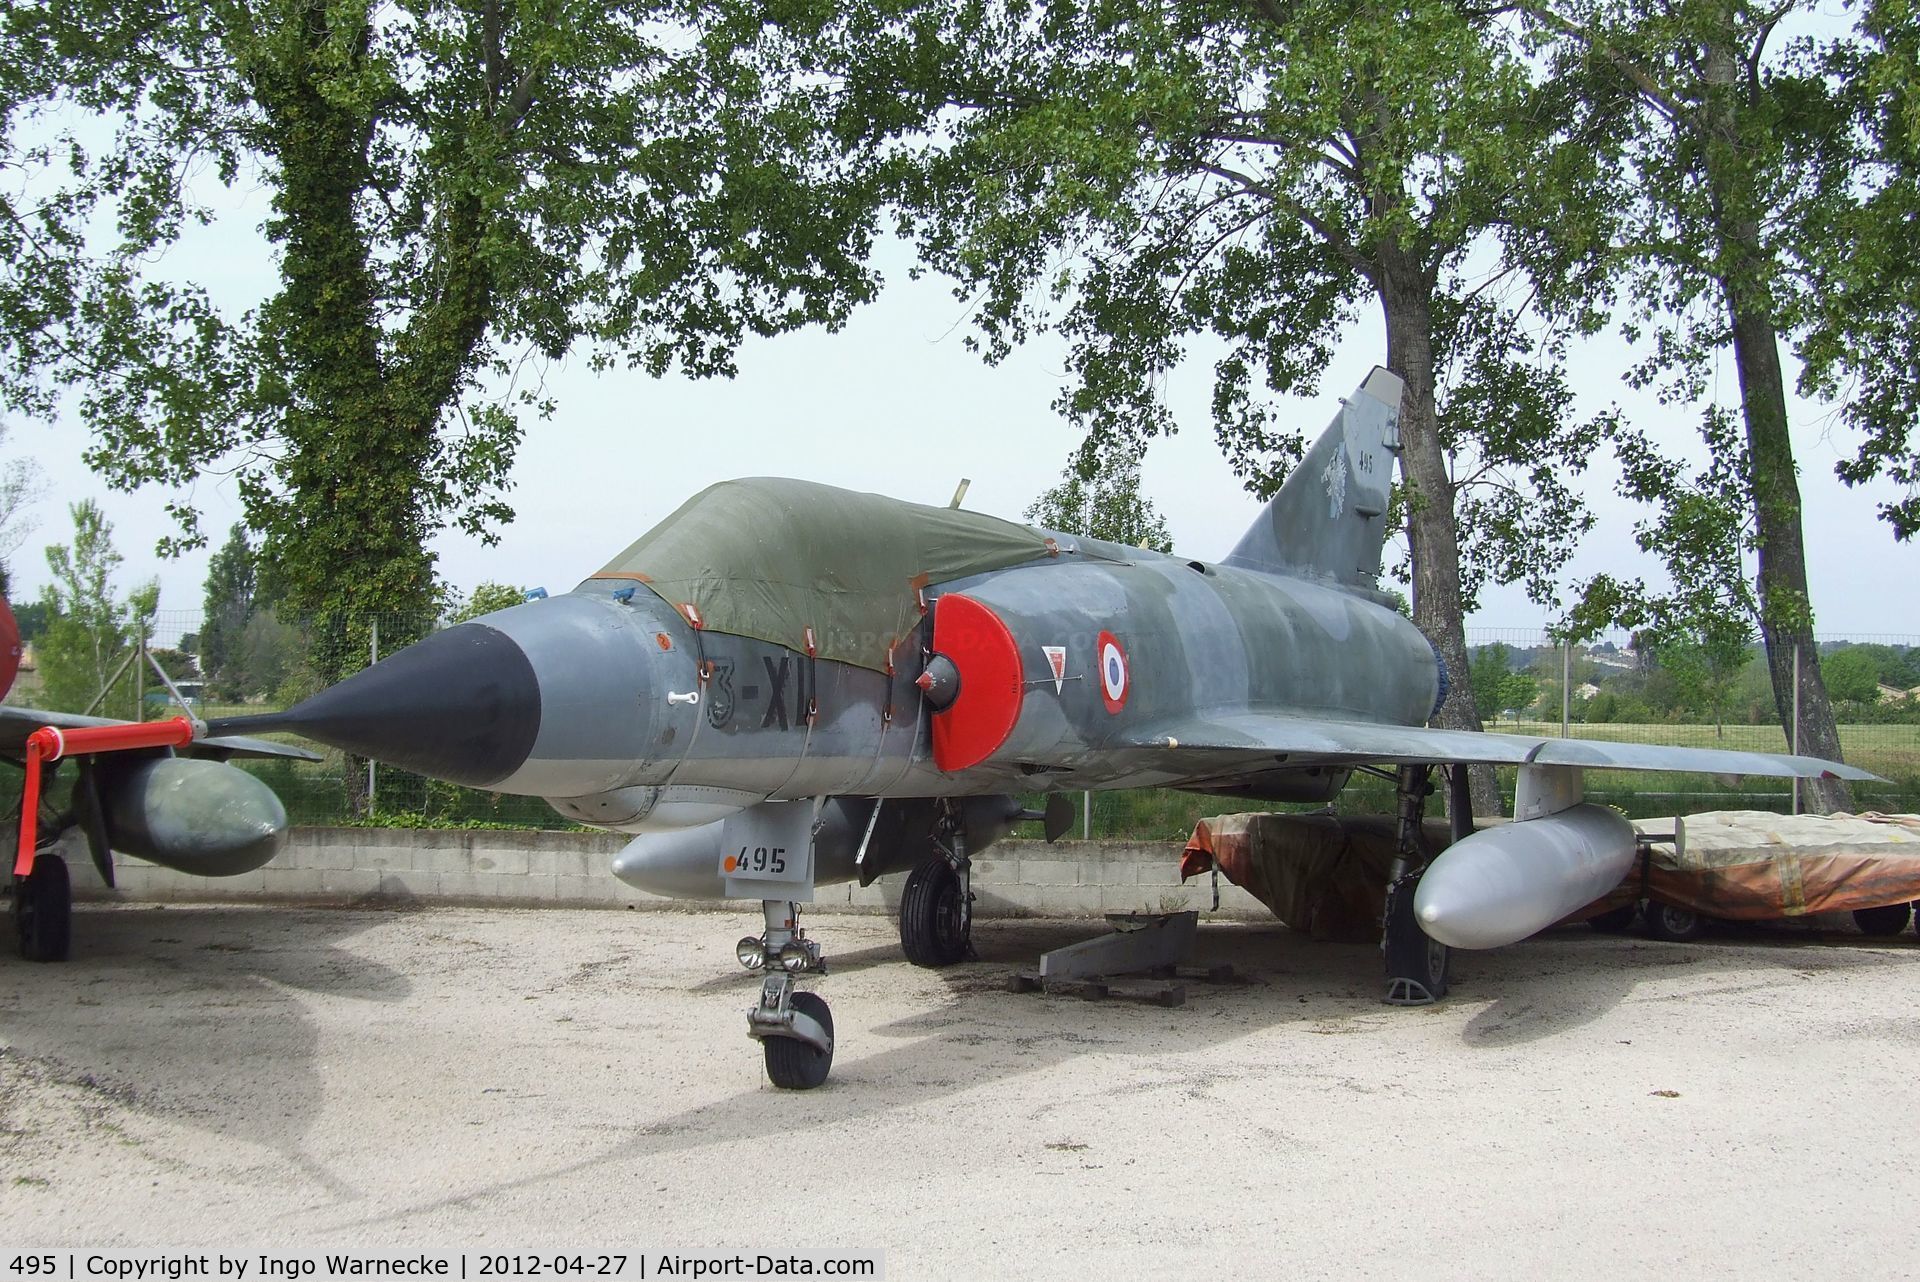 495, Dassault Mirage IIIE C/N 495, Dassault Mirage III E at the Musee Aeronautique, Orange